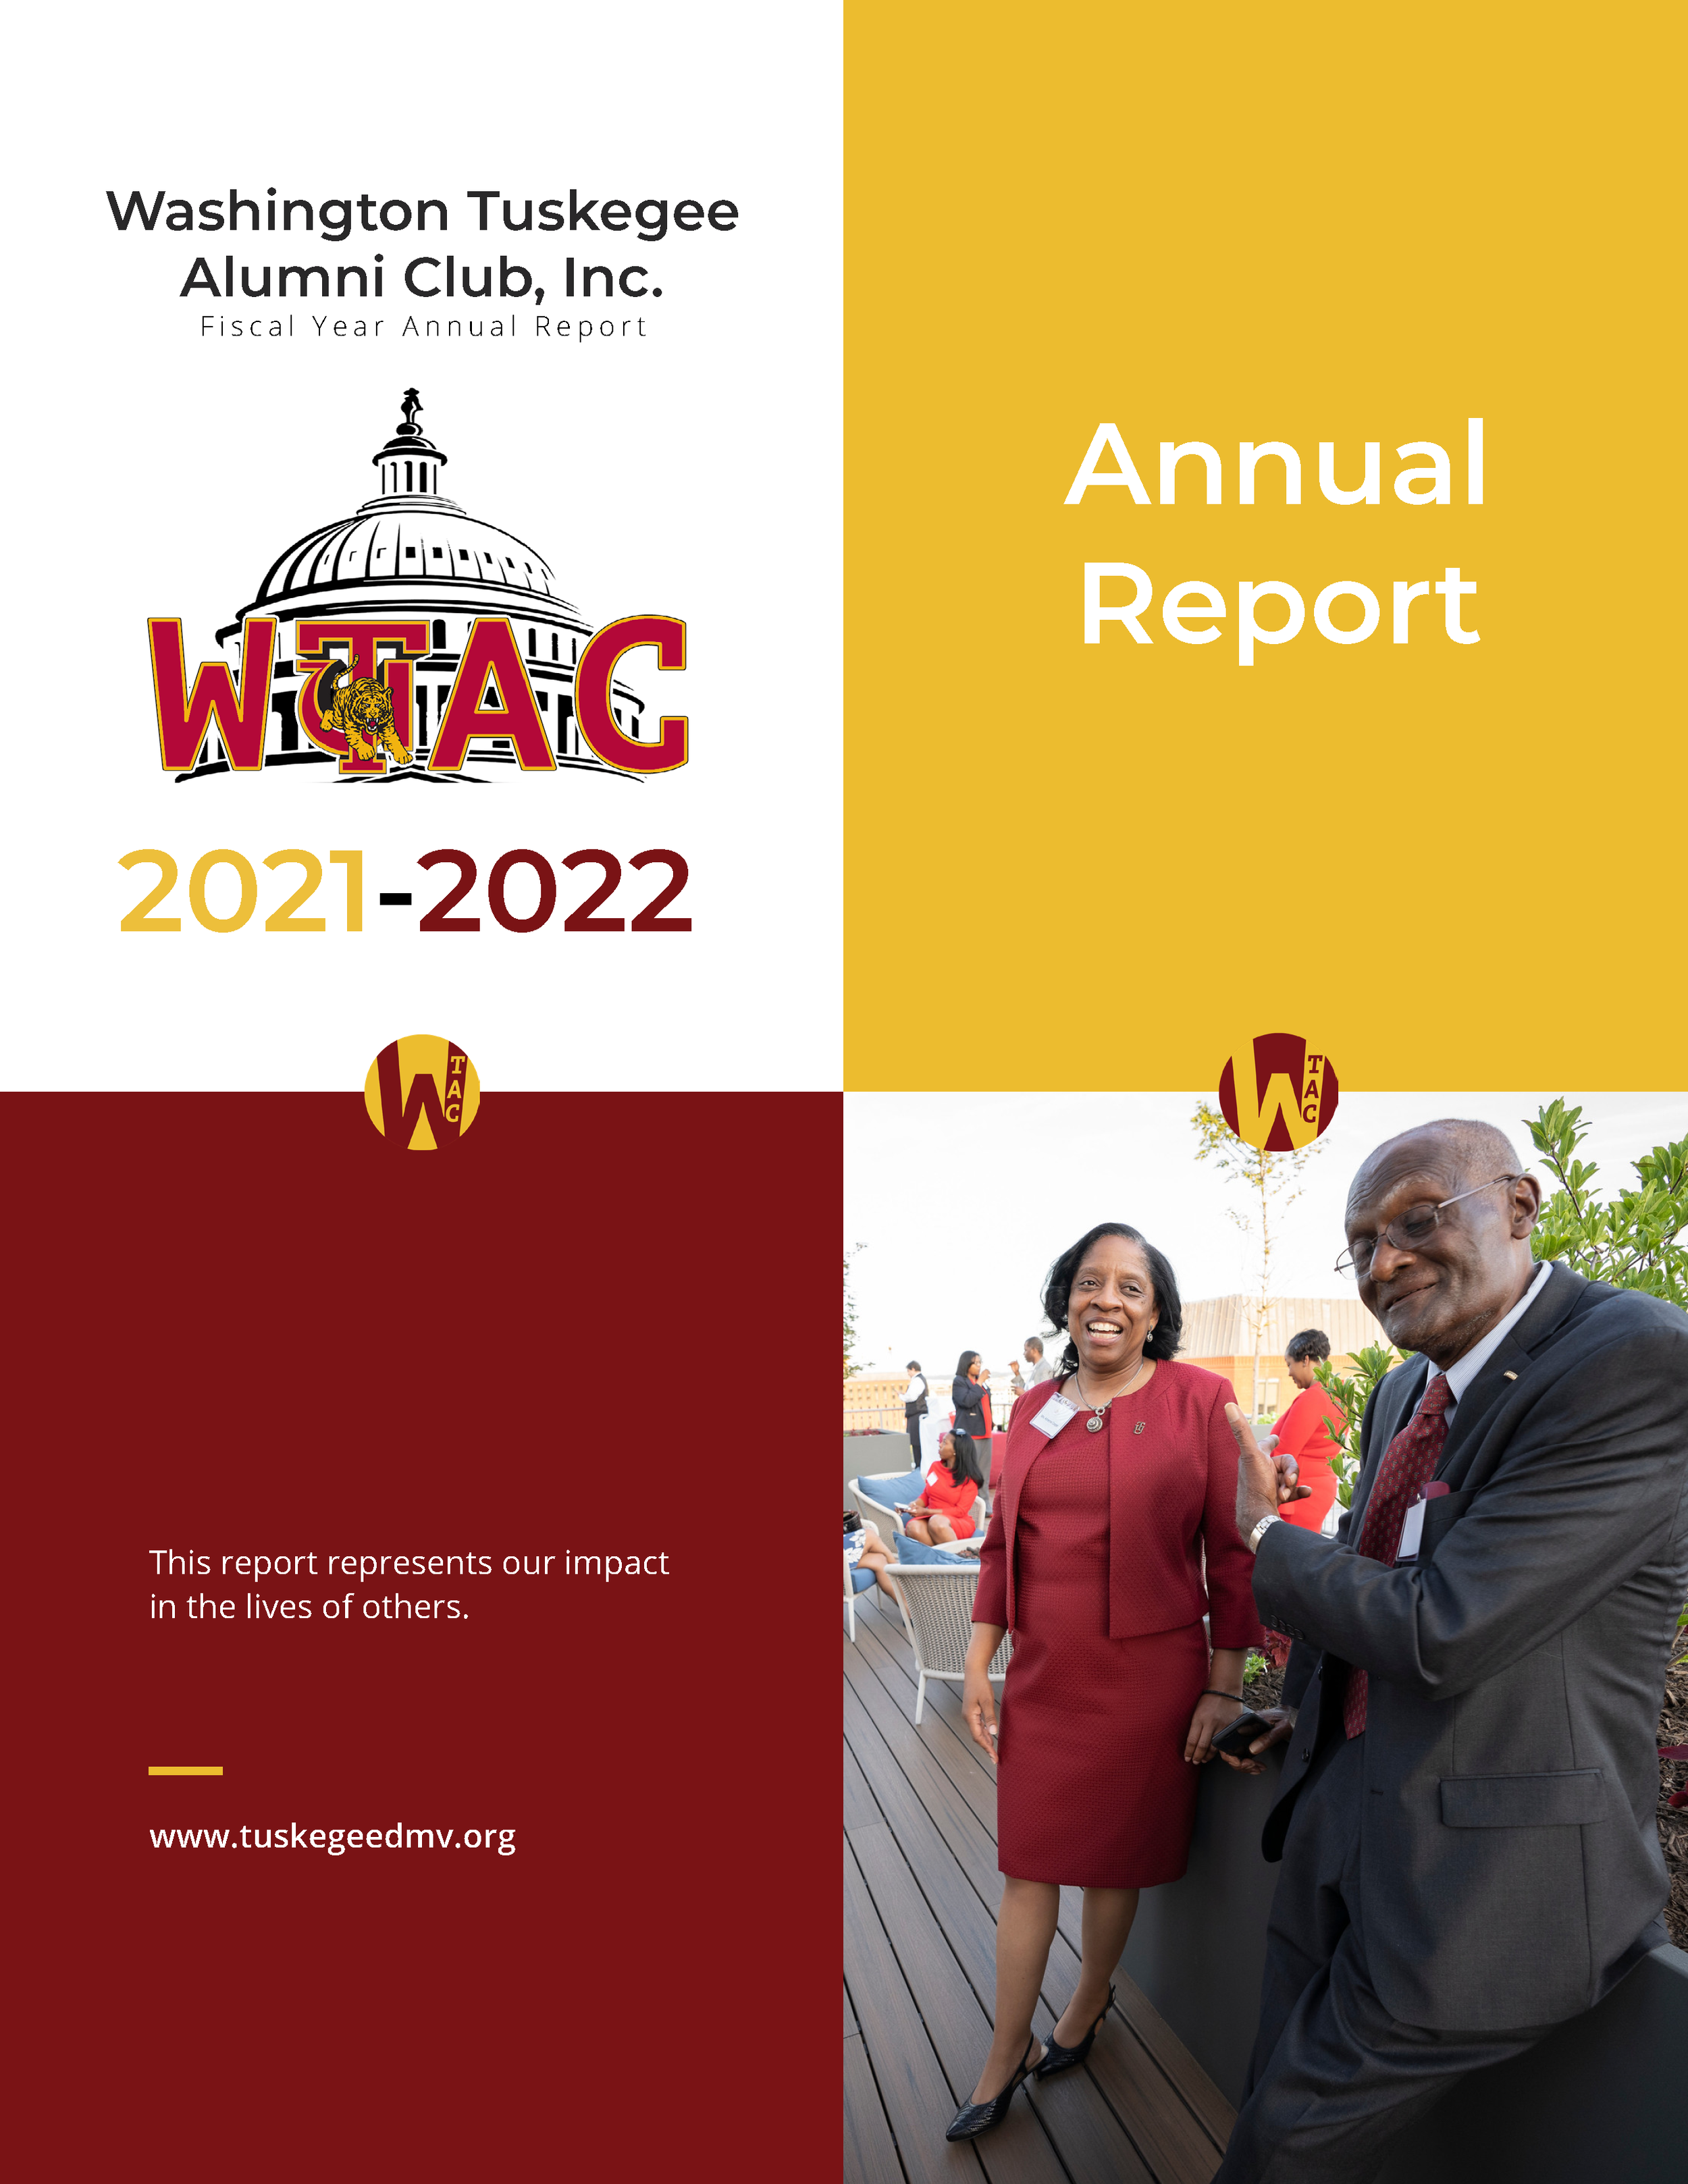 WashingtonTuskegeeAlumniClubAnnualReport-2021-2022_2022-11-29_print_Page_01.png